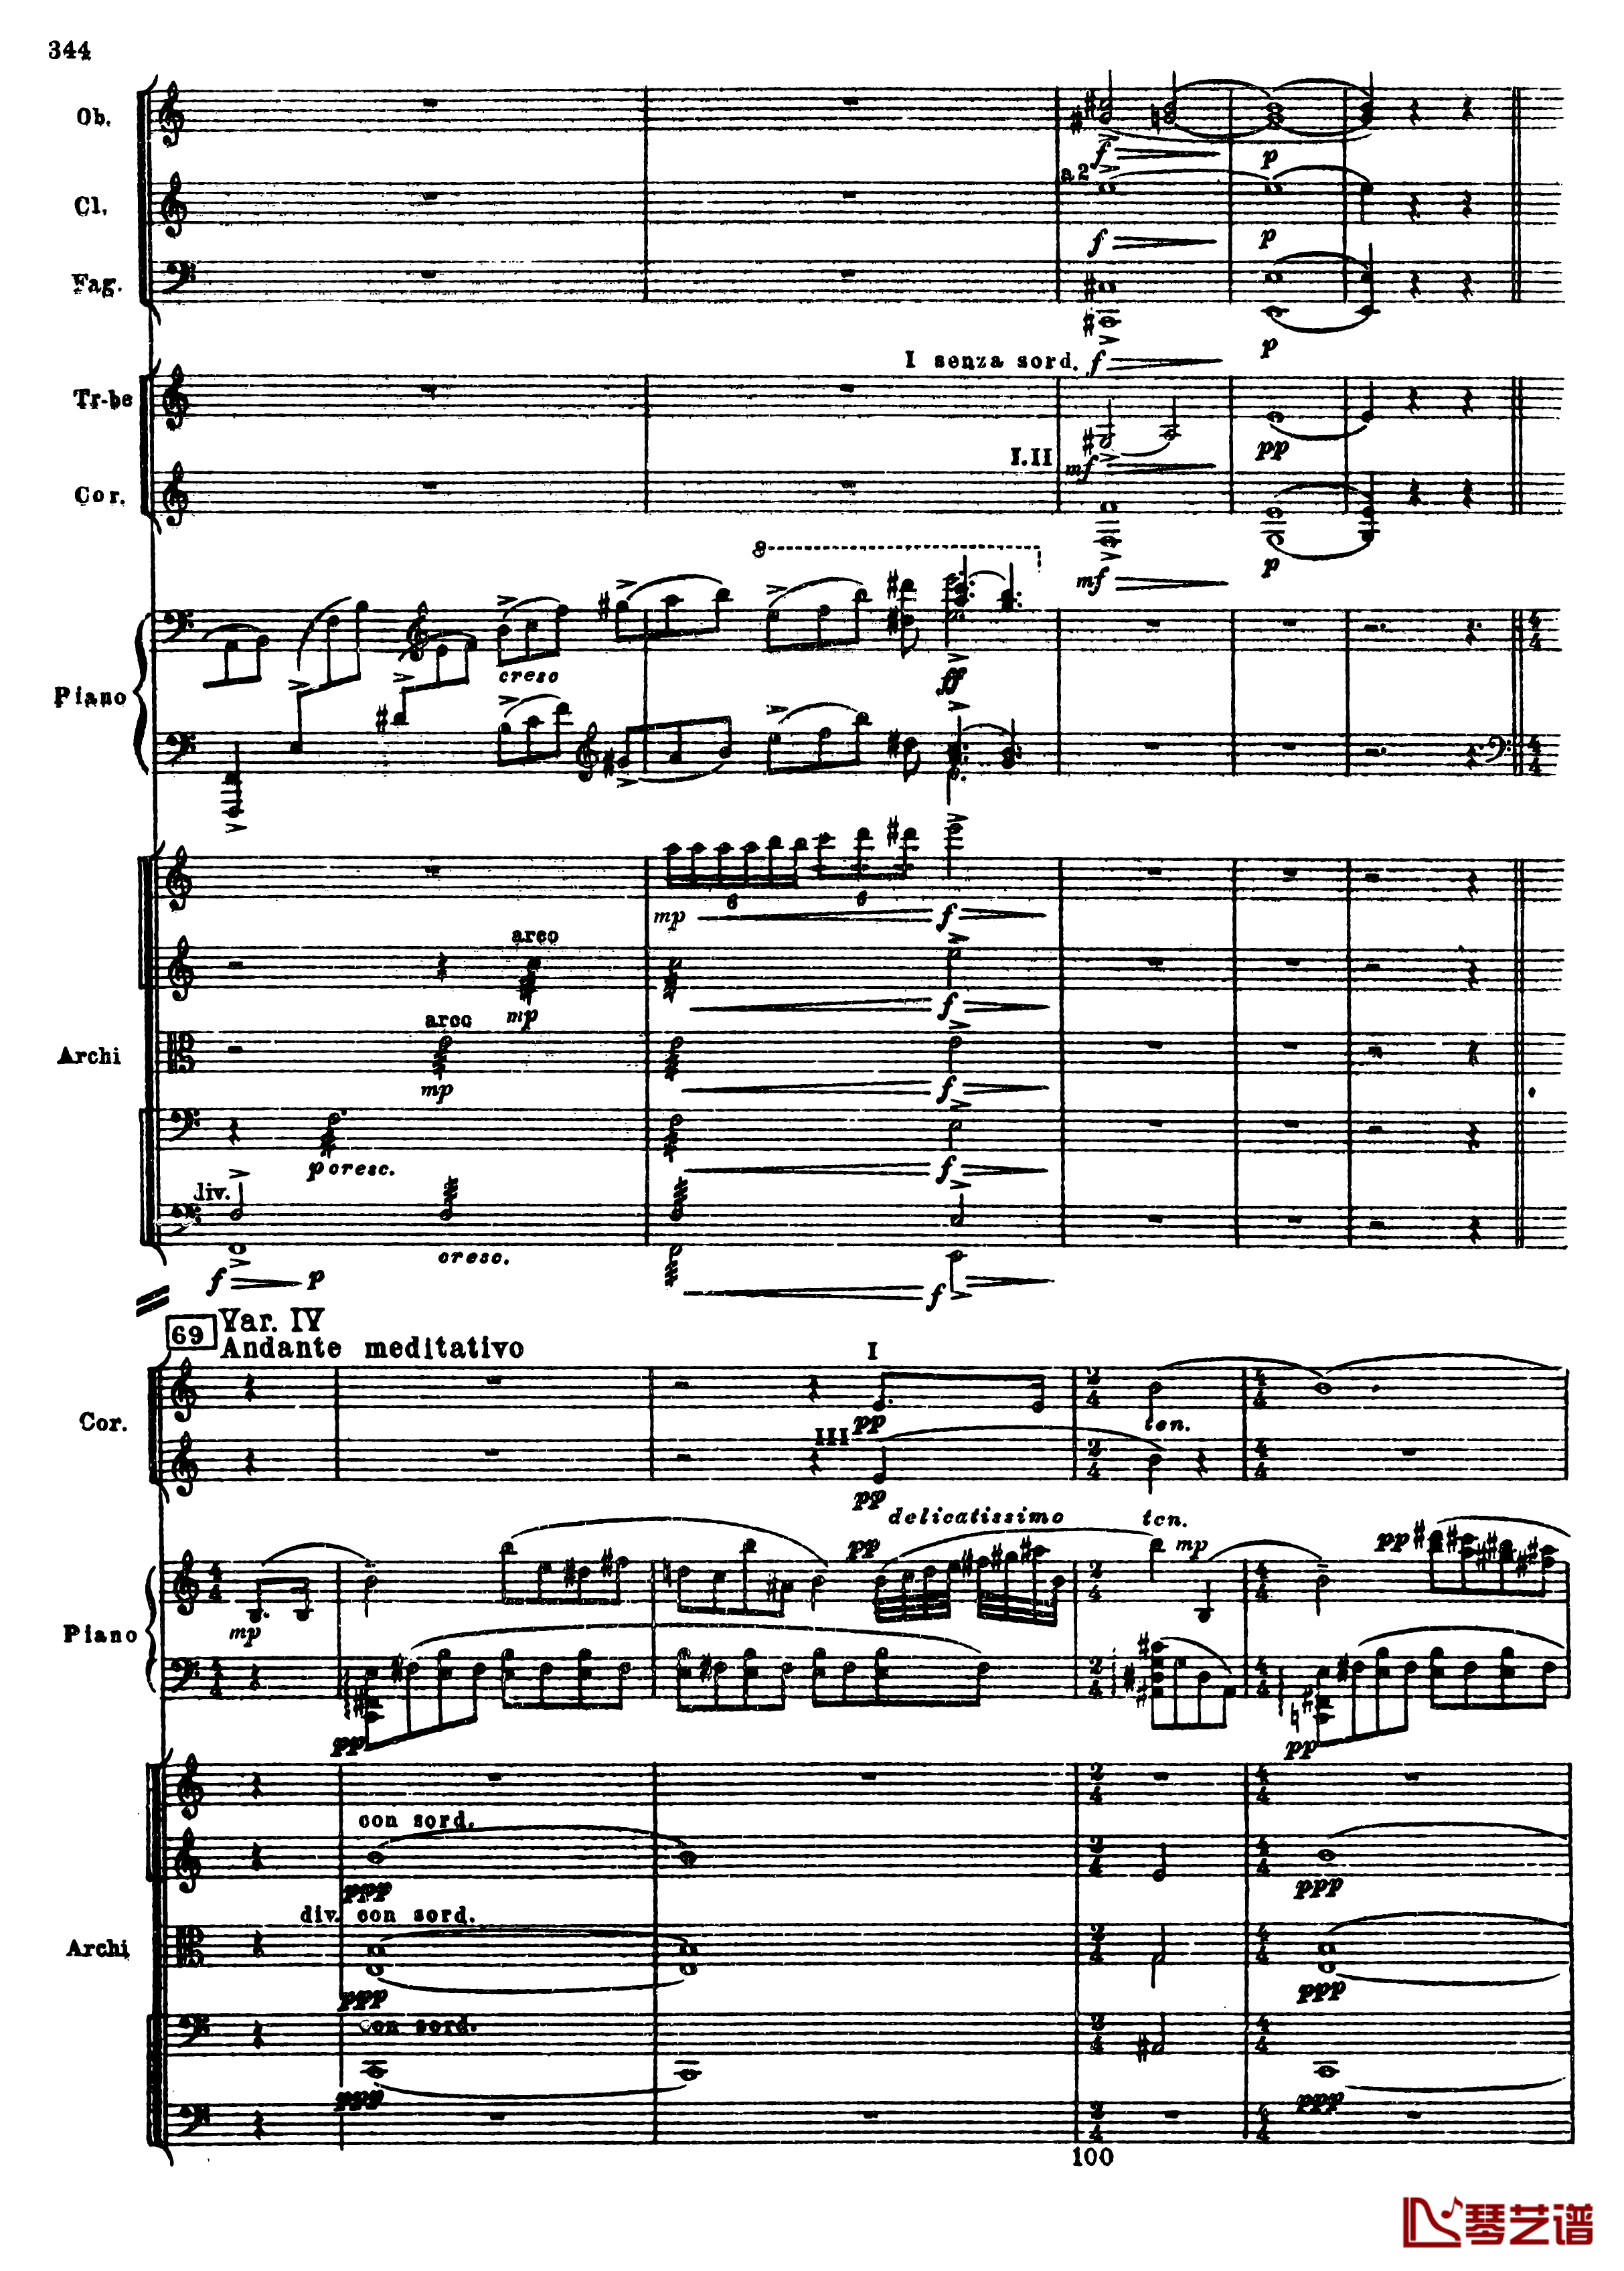 普罗科菲耶夫第三钢琴协奏曲钢琴谱-总谱-普罗科非耶夫76